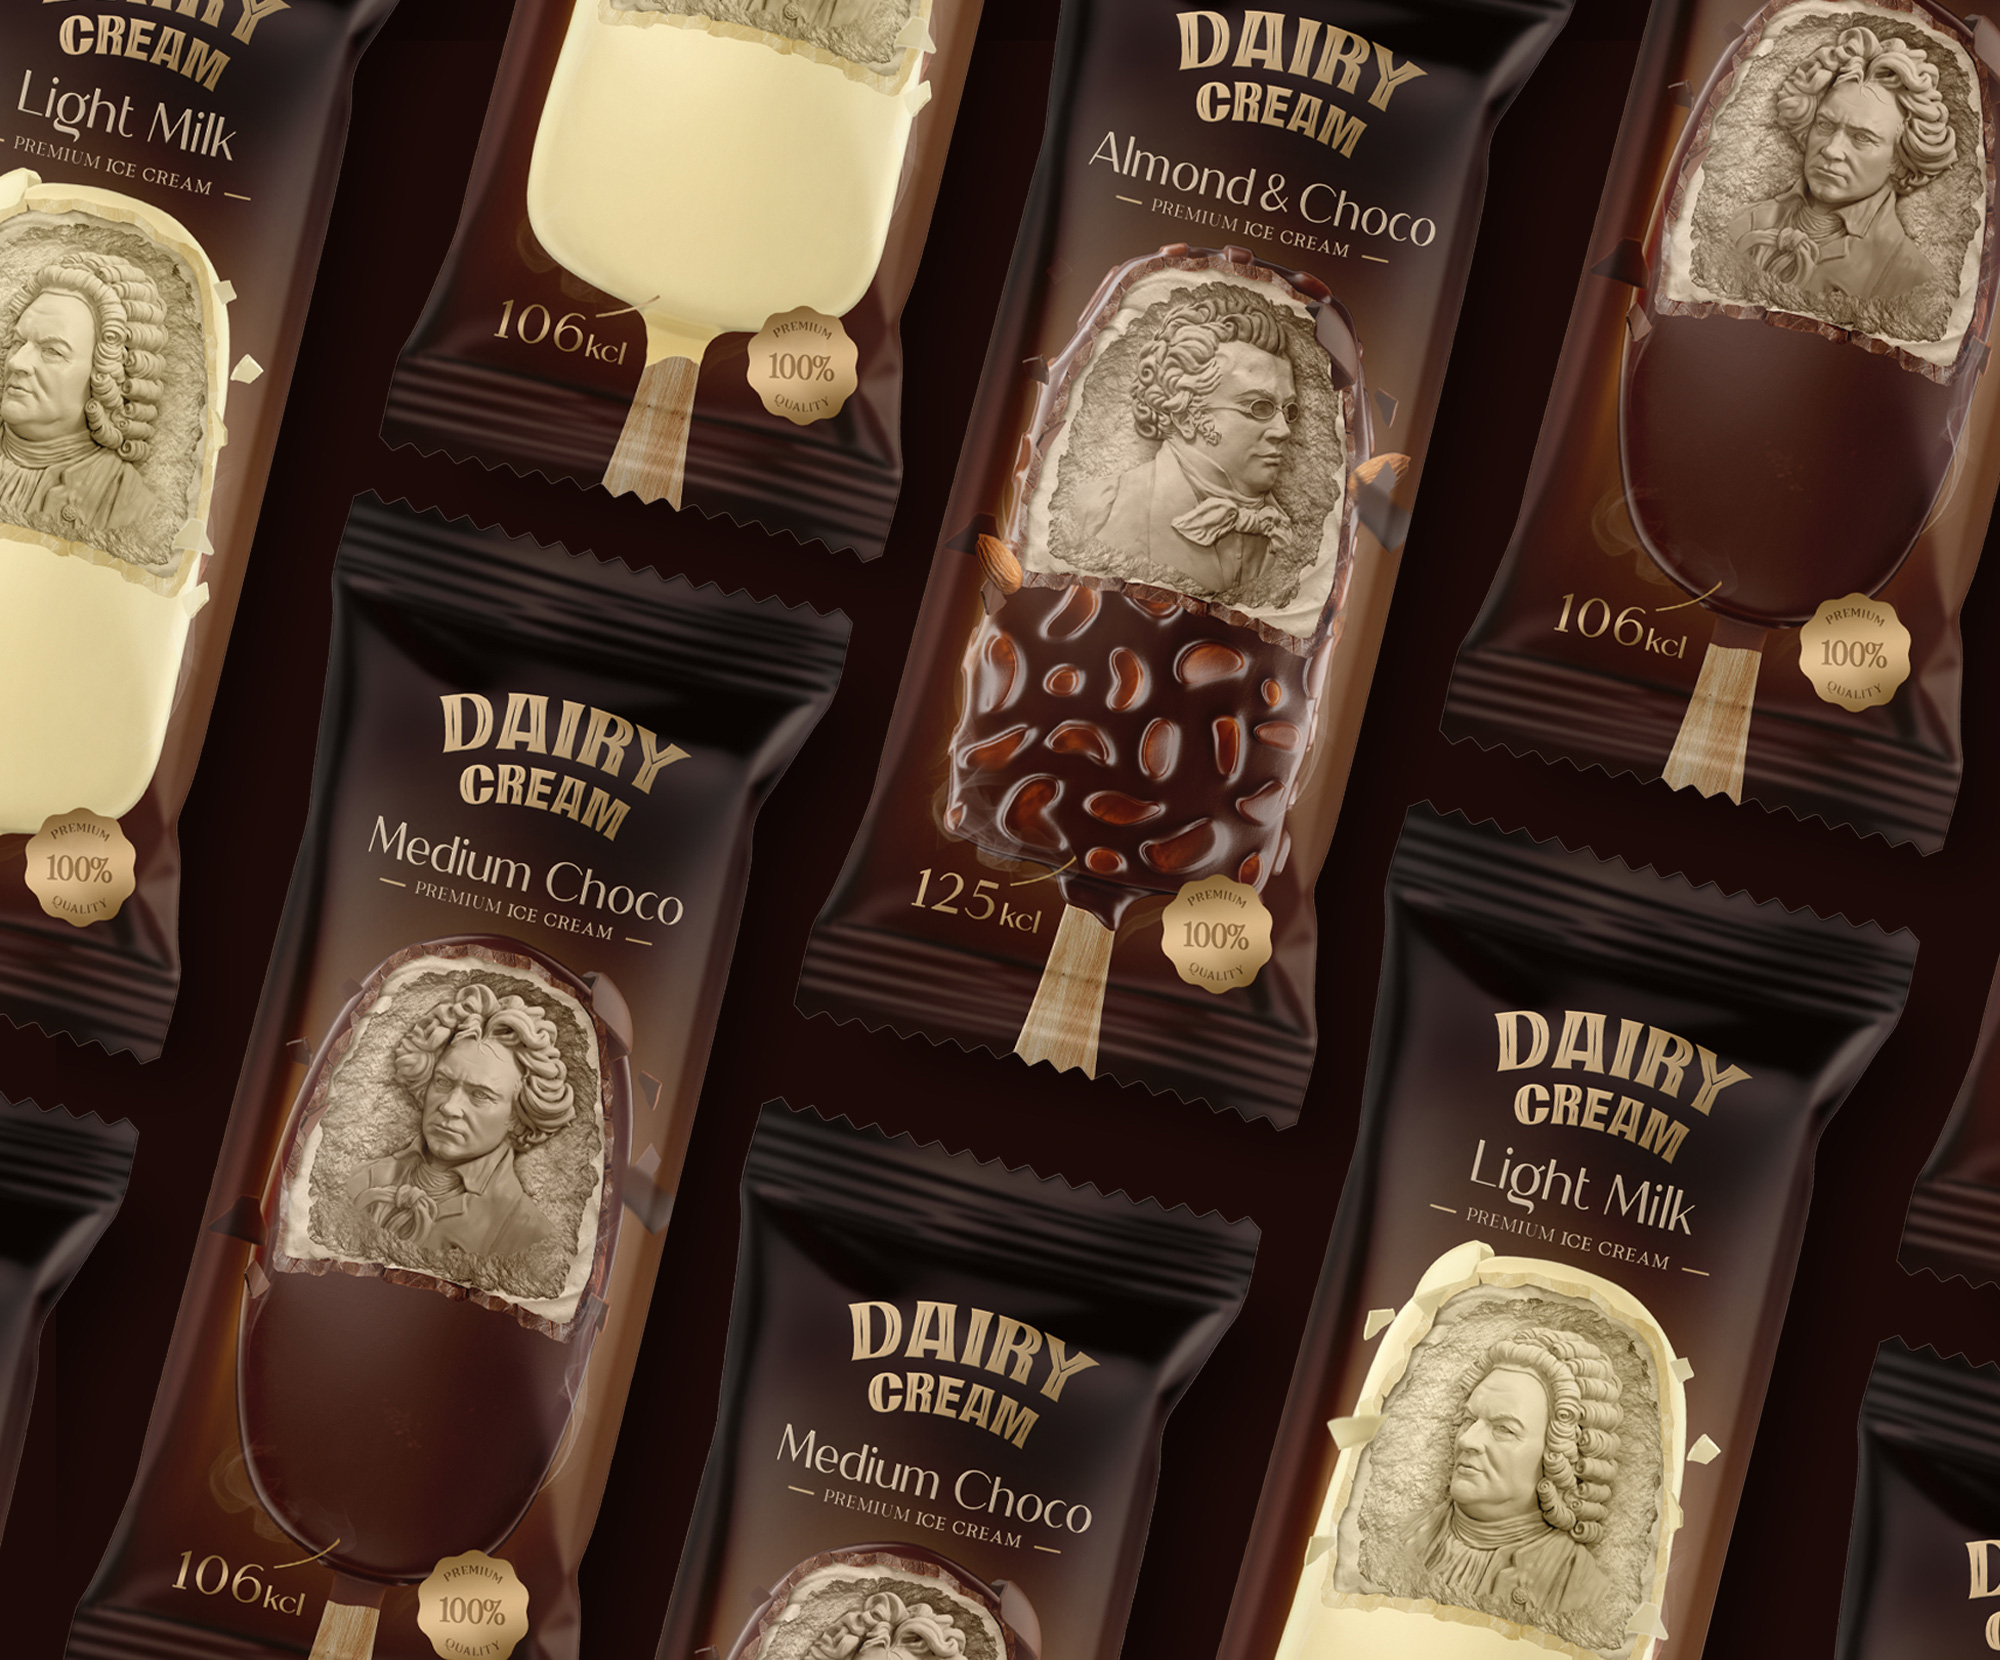 Studio Metis Creates Dairy Cream Ice Cream Packaging Design